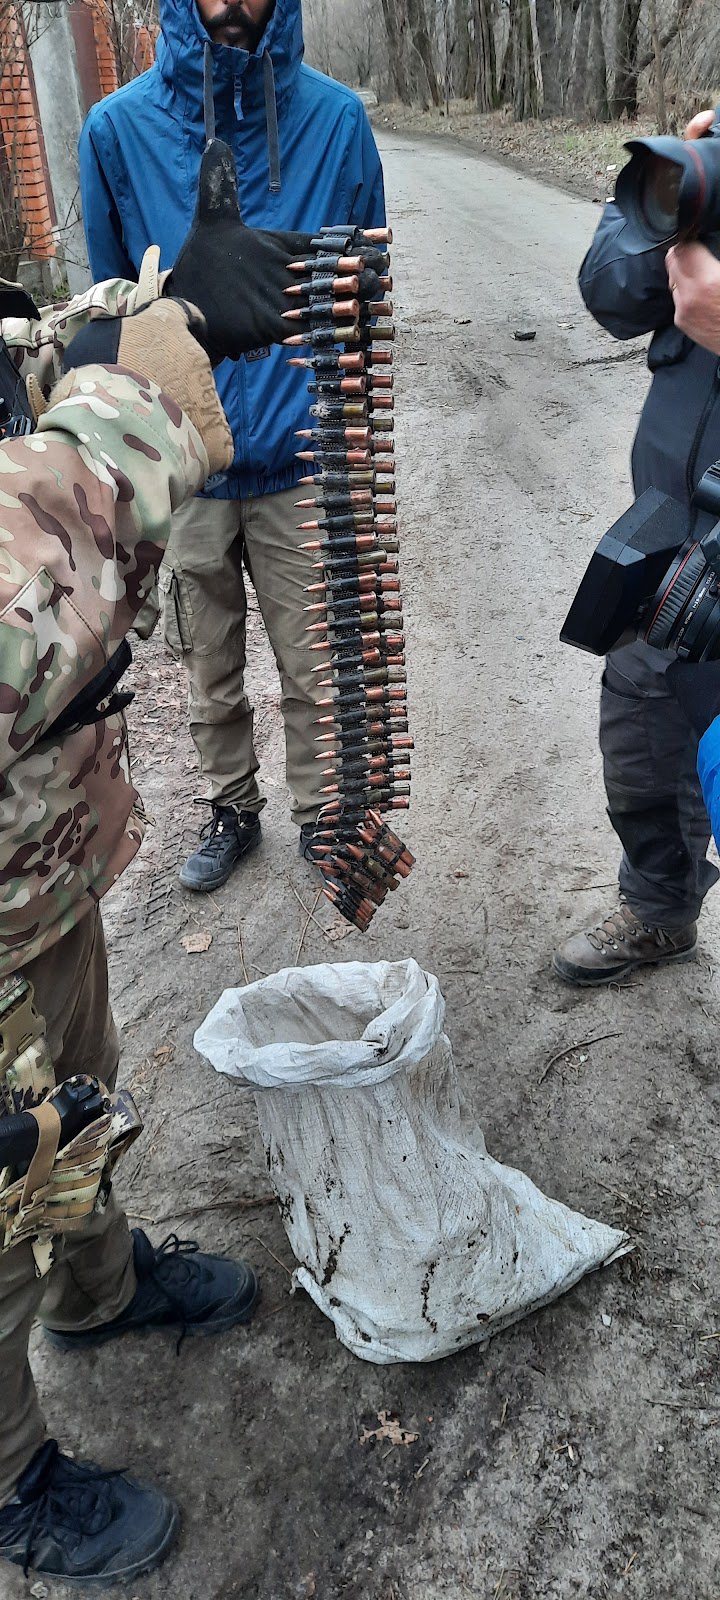 Місцевий мешканець поцупив у росіян дві стрічки для кулемета – майже 500 патронів